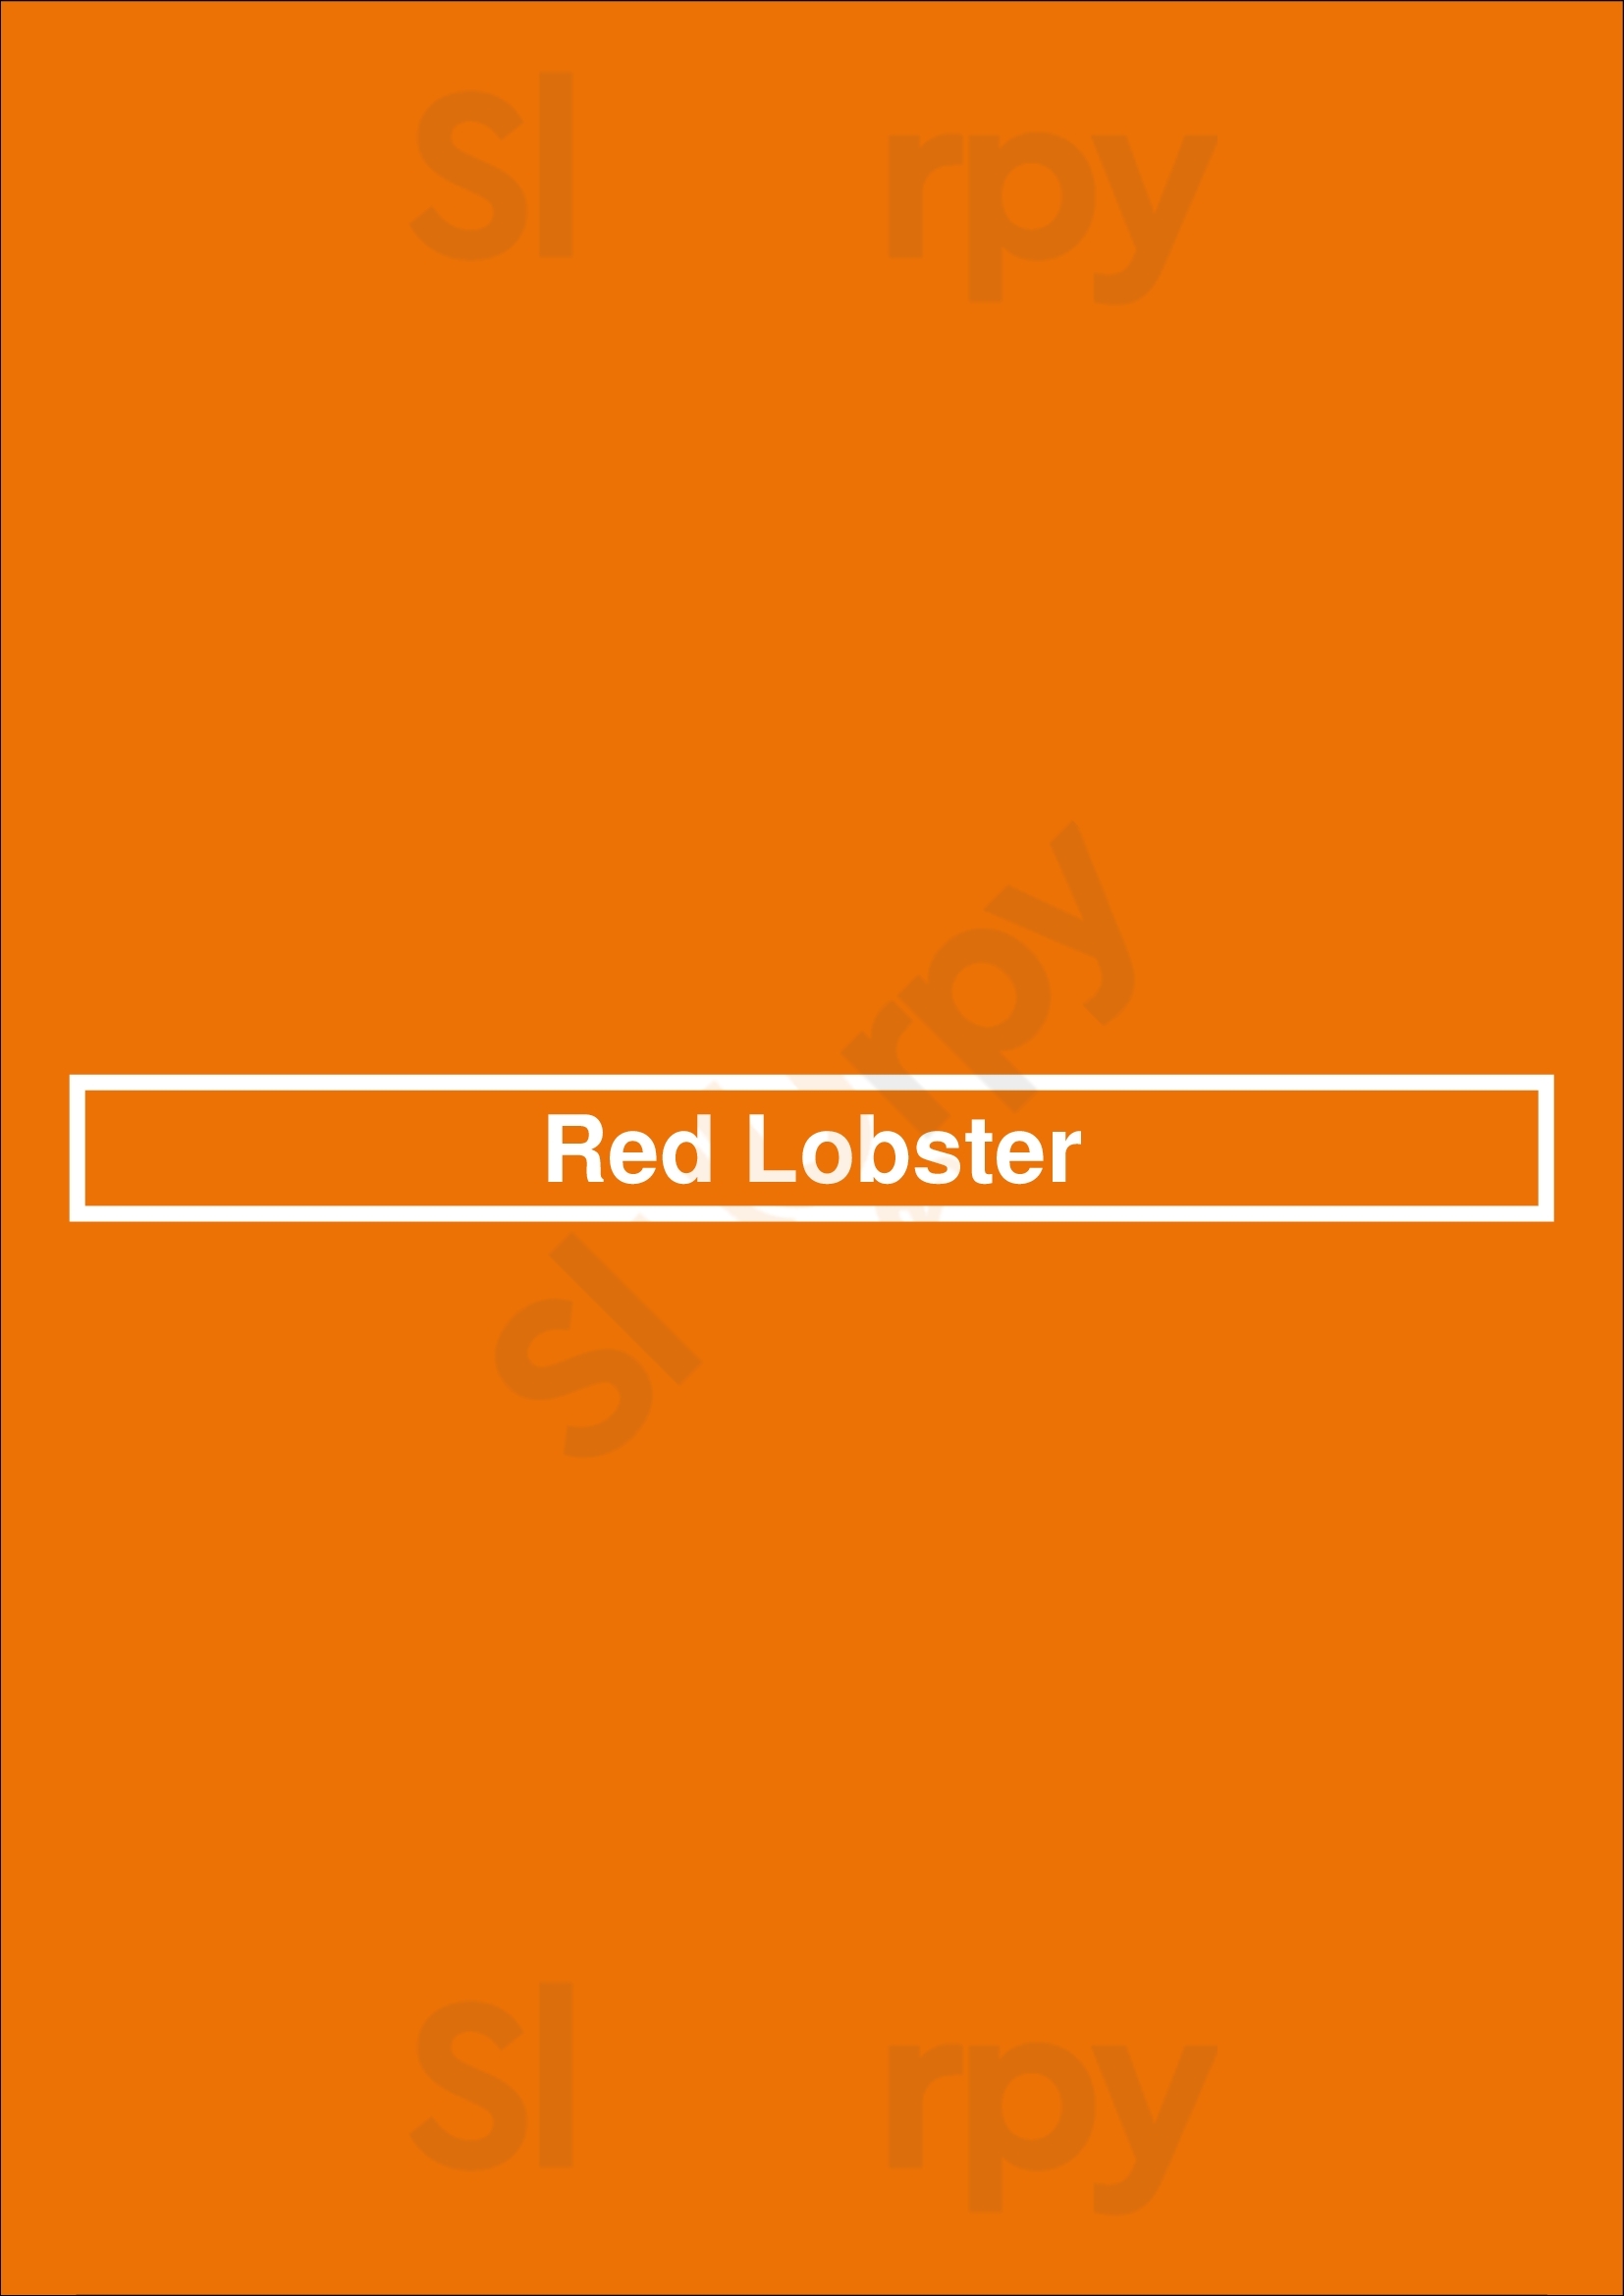 Red Lobster Jackson Menu - 1